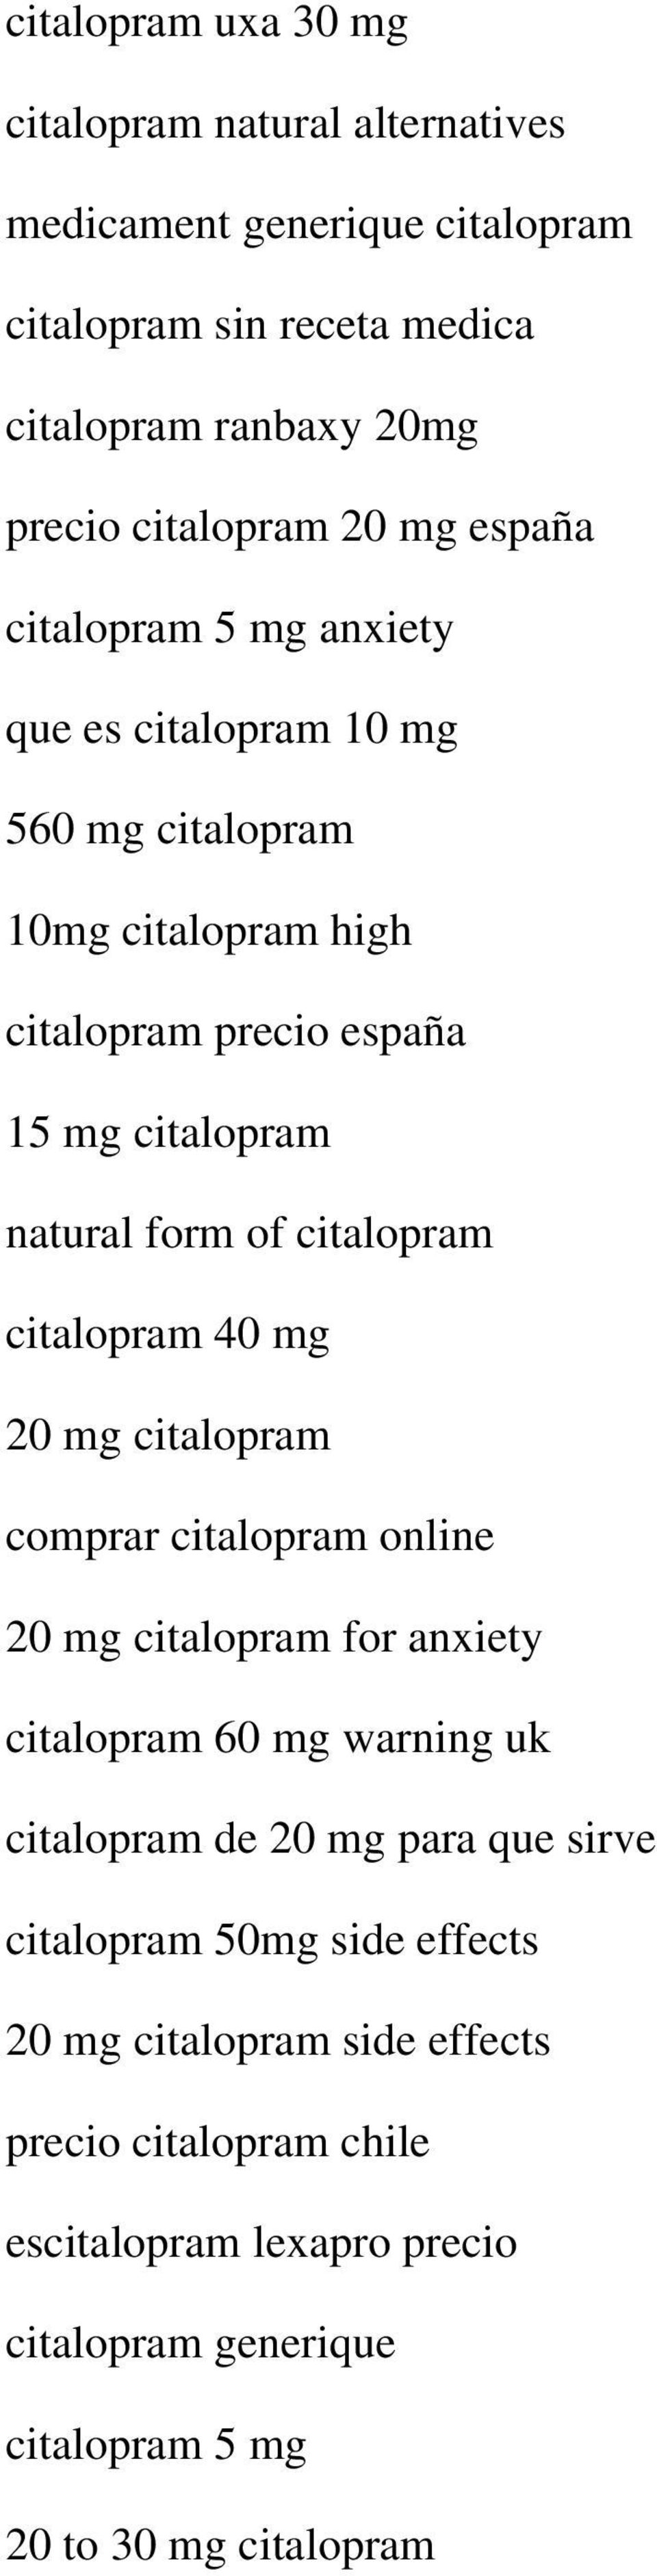 citalopram citalopram 40 mg 20 mg citalopram comprar citalopram online 20 mg citalopram for anxiety citalopram 60 mg warning uk citalopram de 20 mg para que